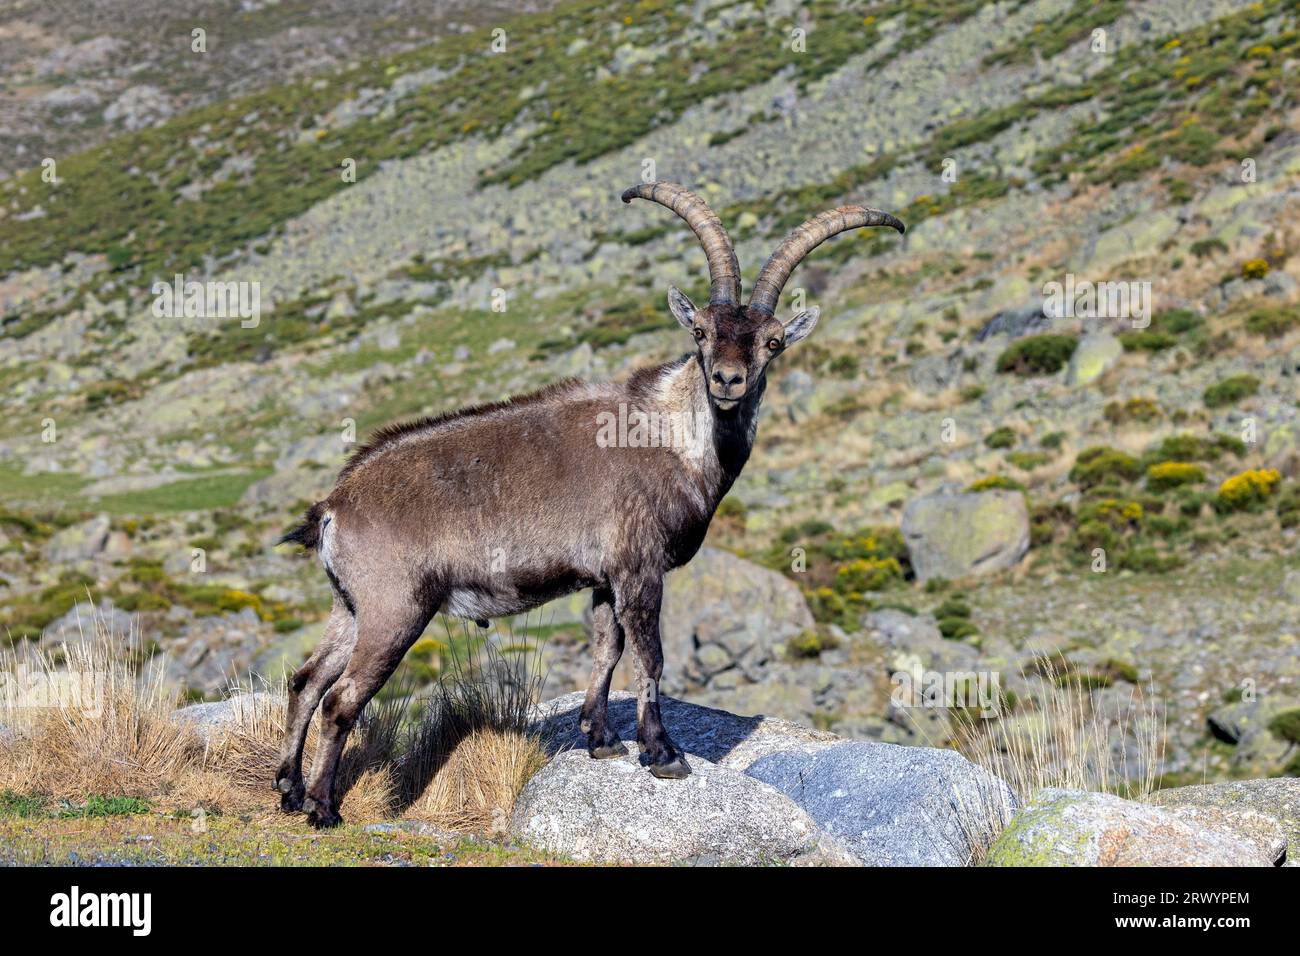 Bouquetin espagnol (Capra pyrenaica, Capra ibex pyrenaica), mâle, Espagne, Sierra de Gredos Banque D'Images